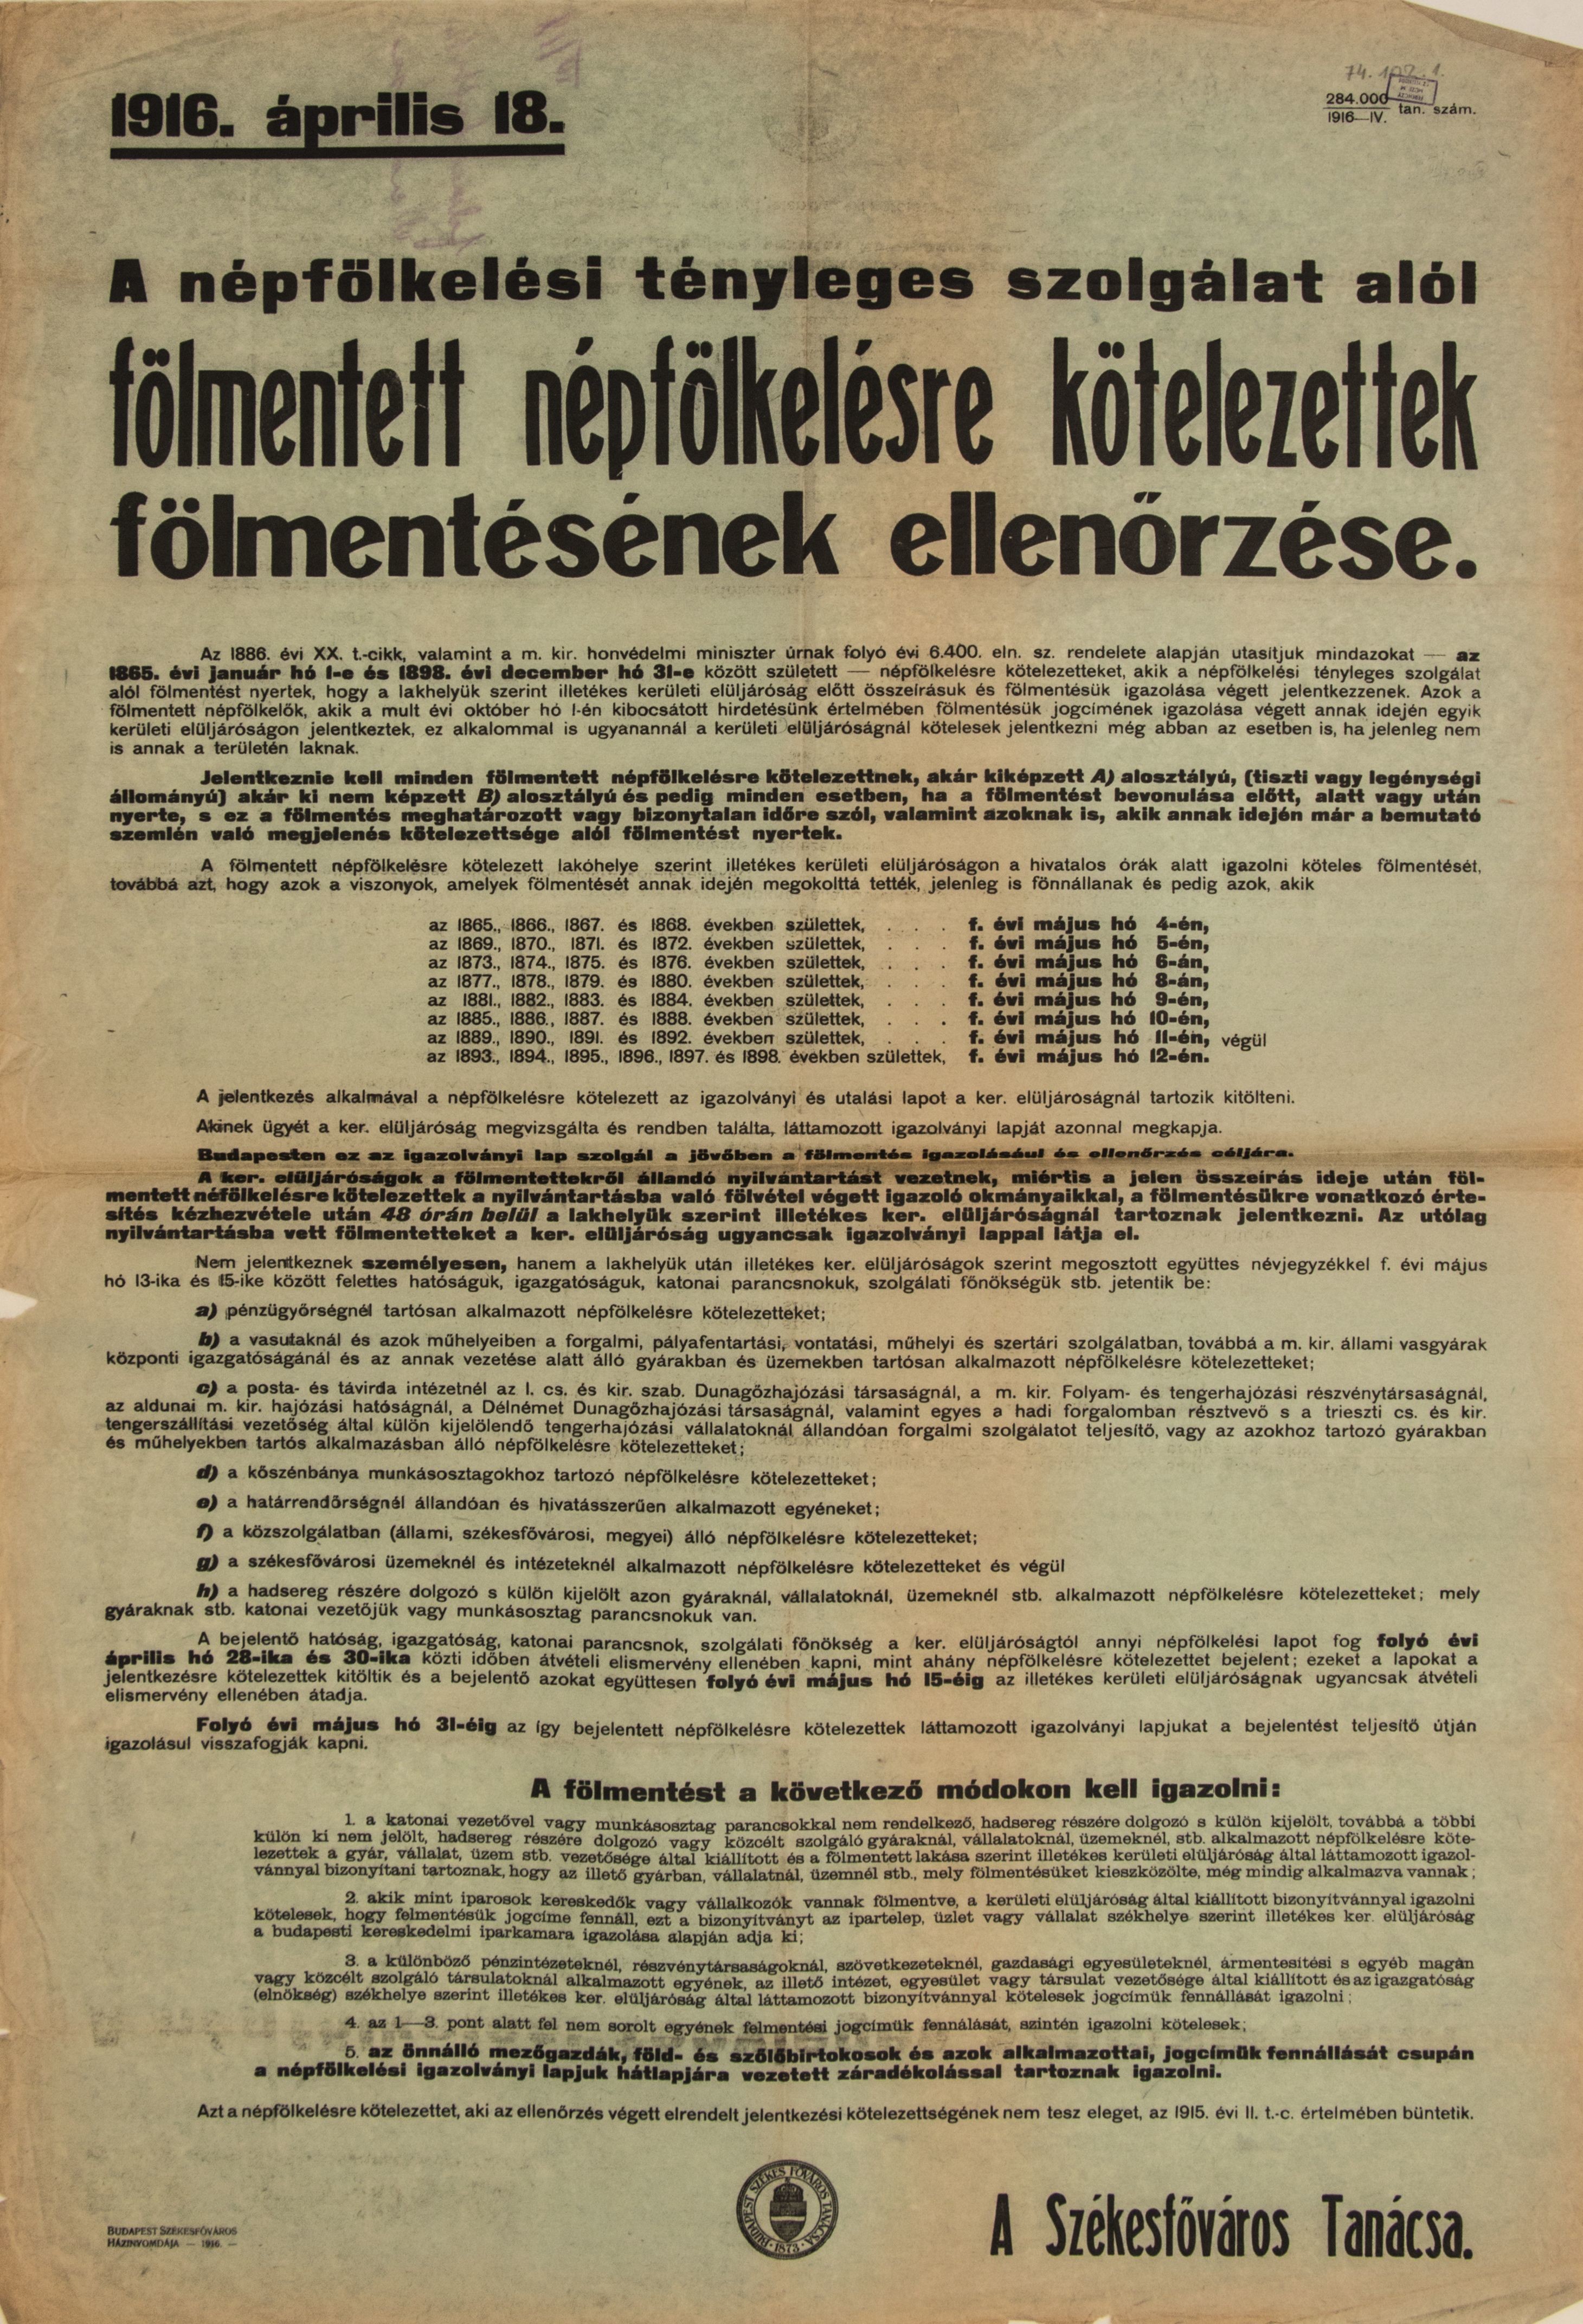 A felmentett népfelkelésre kötelezettek felmentésének ellenőrzése, 1916.04.18. (zöld alap, fekete betű) (Ferenczy Múzeumi Centrum CC BY-NC-SA)